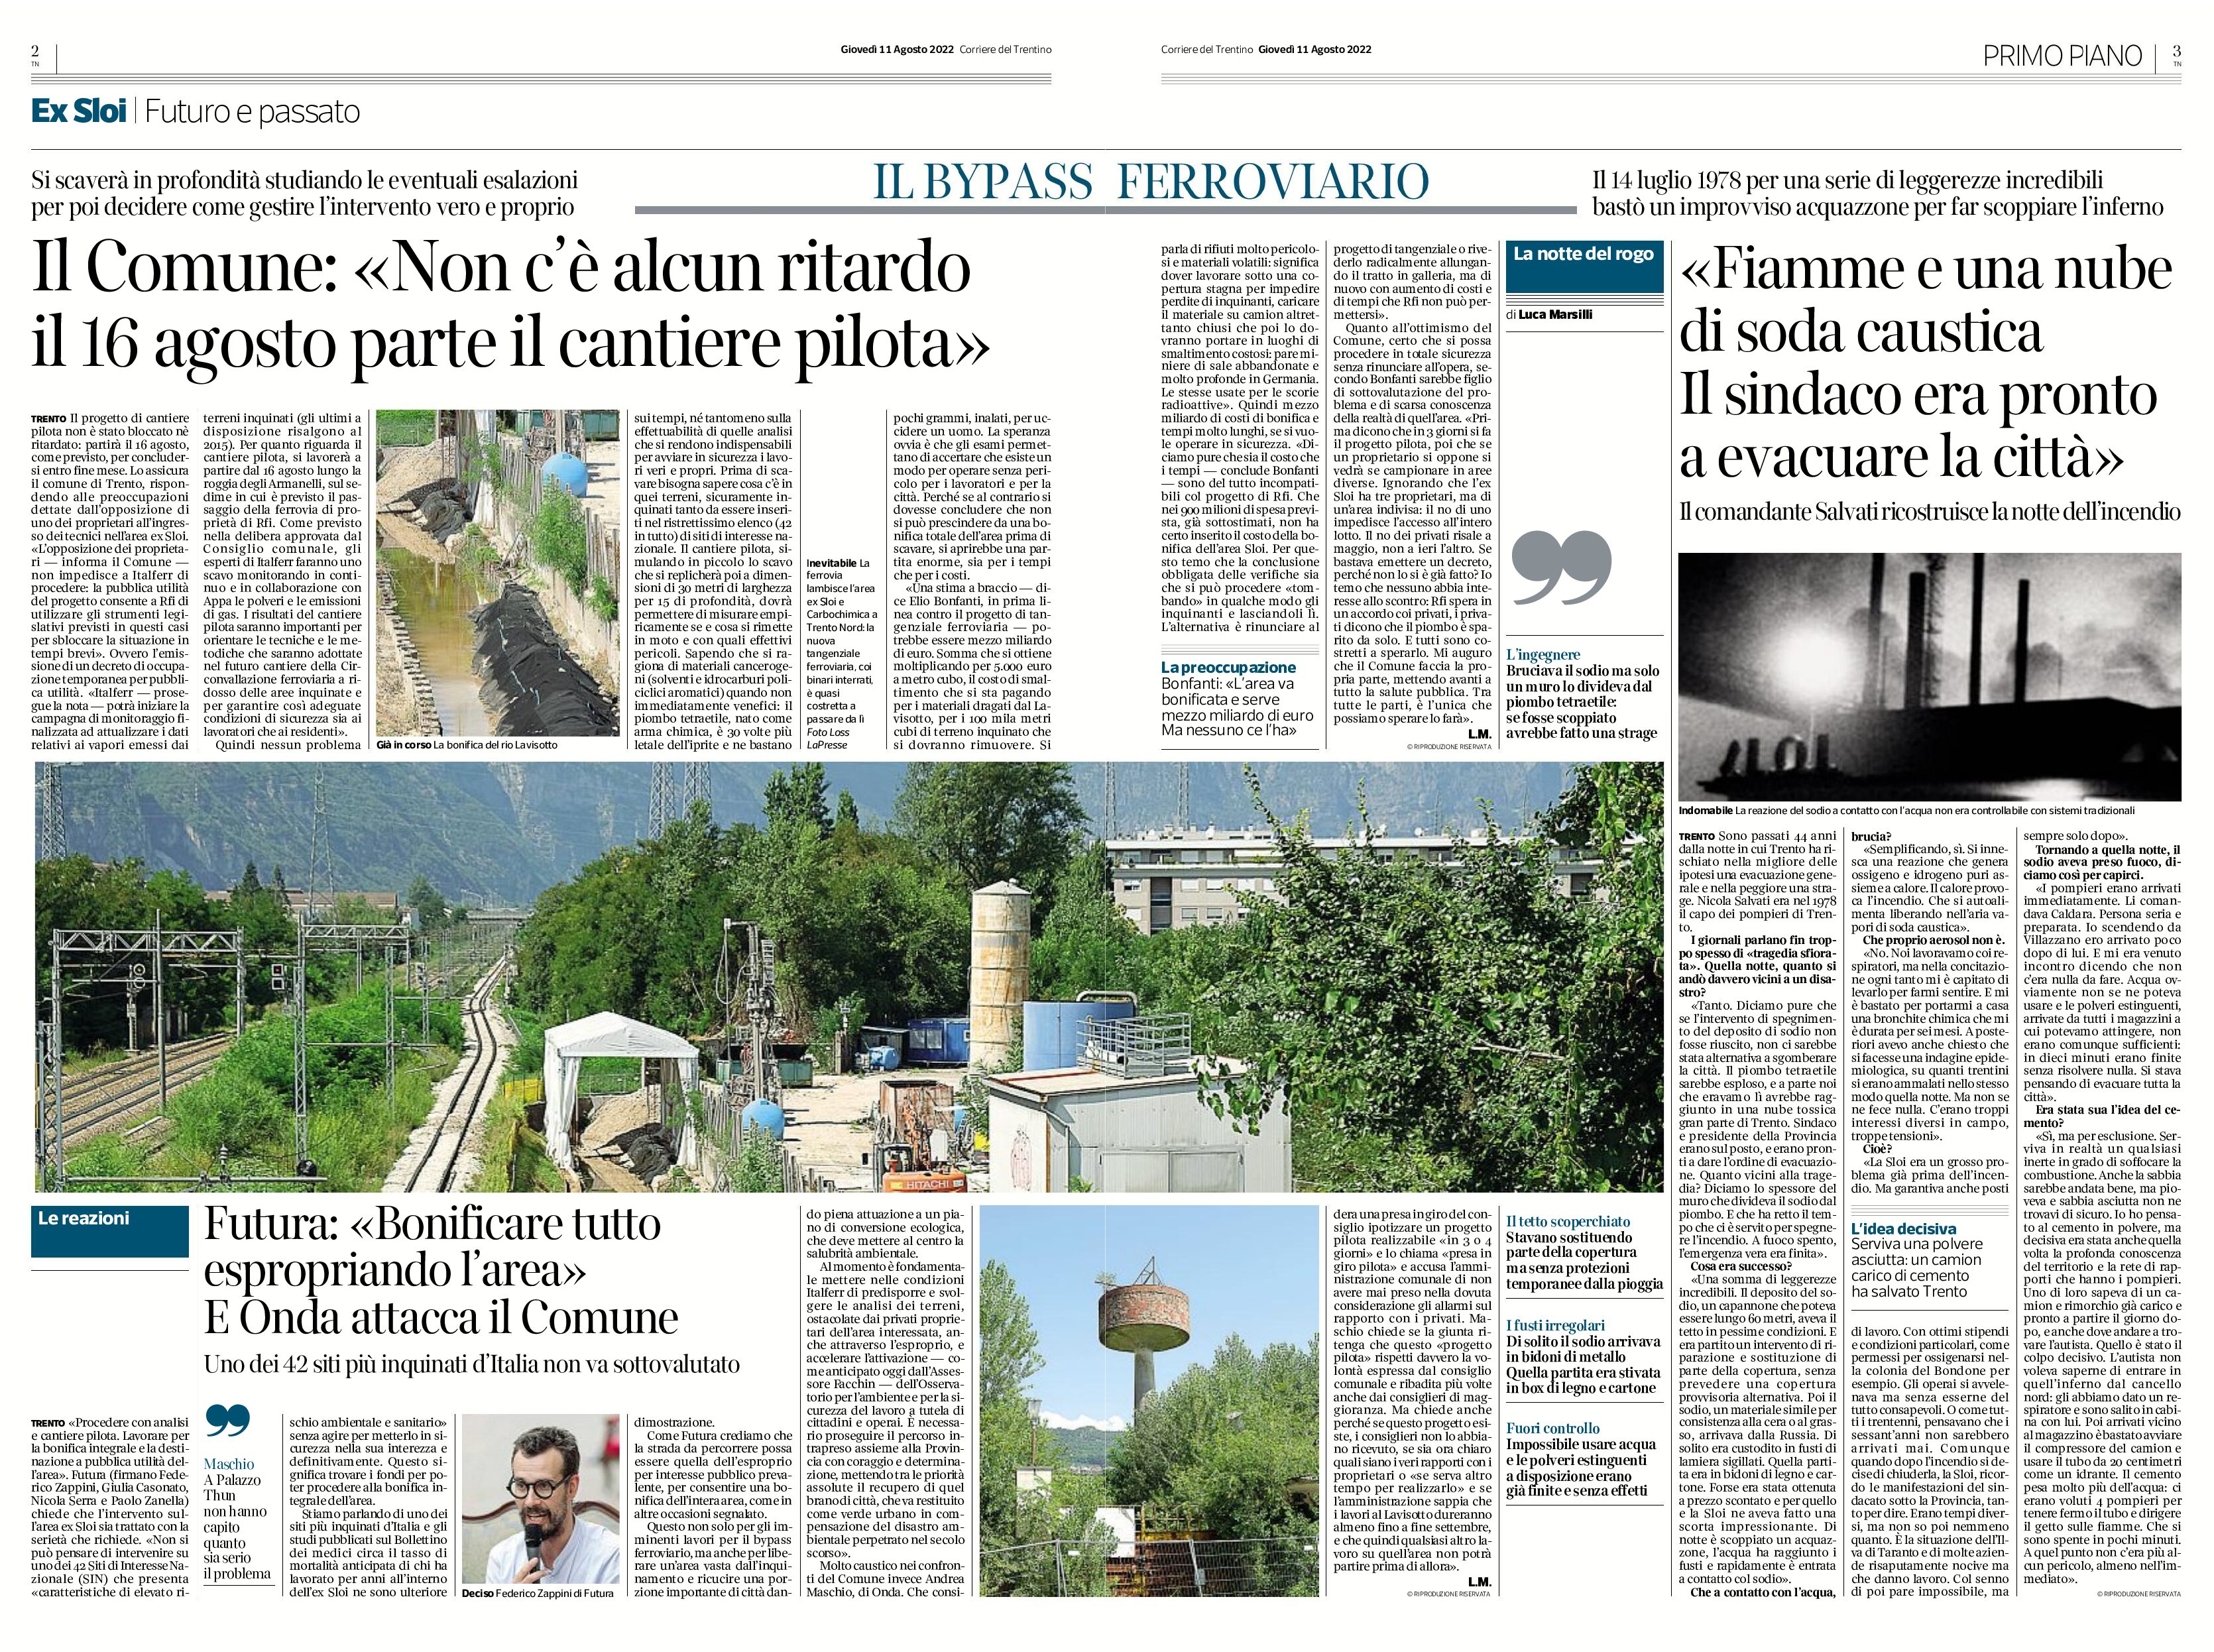 Trento Nord: aree inquinate, il 16 agosto parte il cantiere pilota